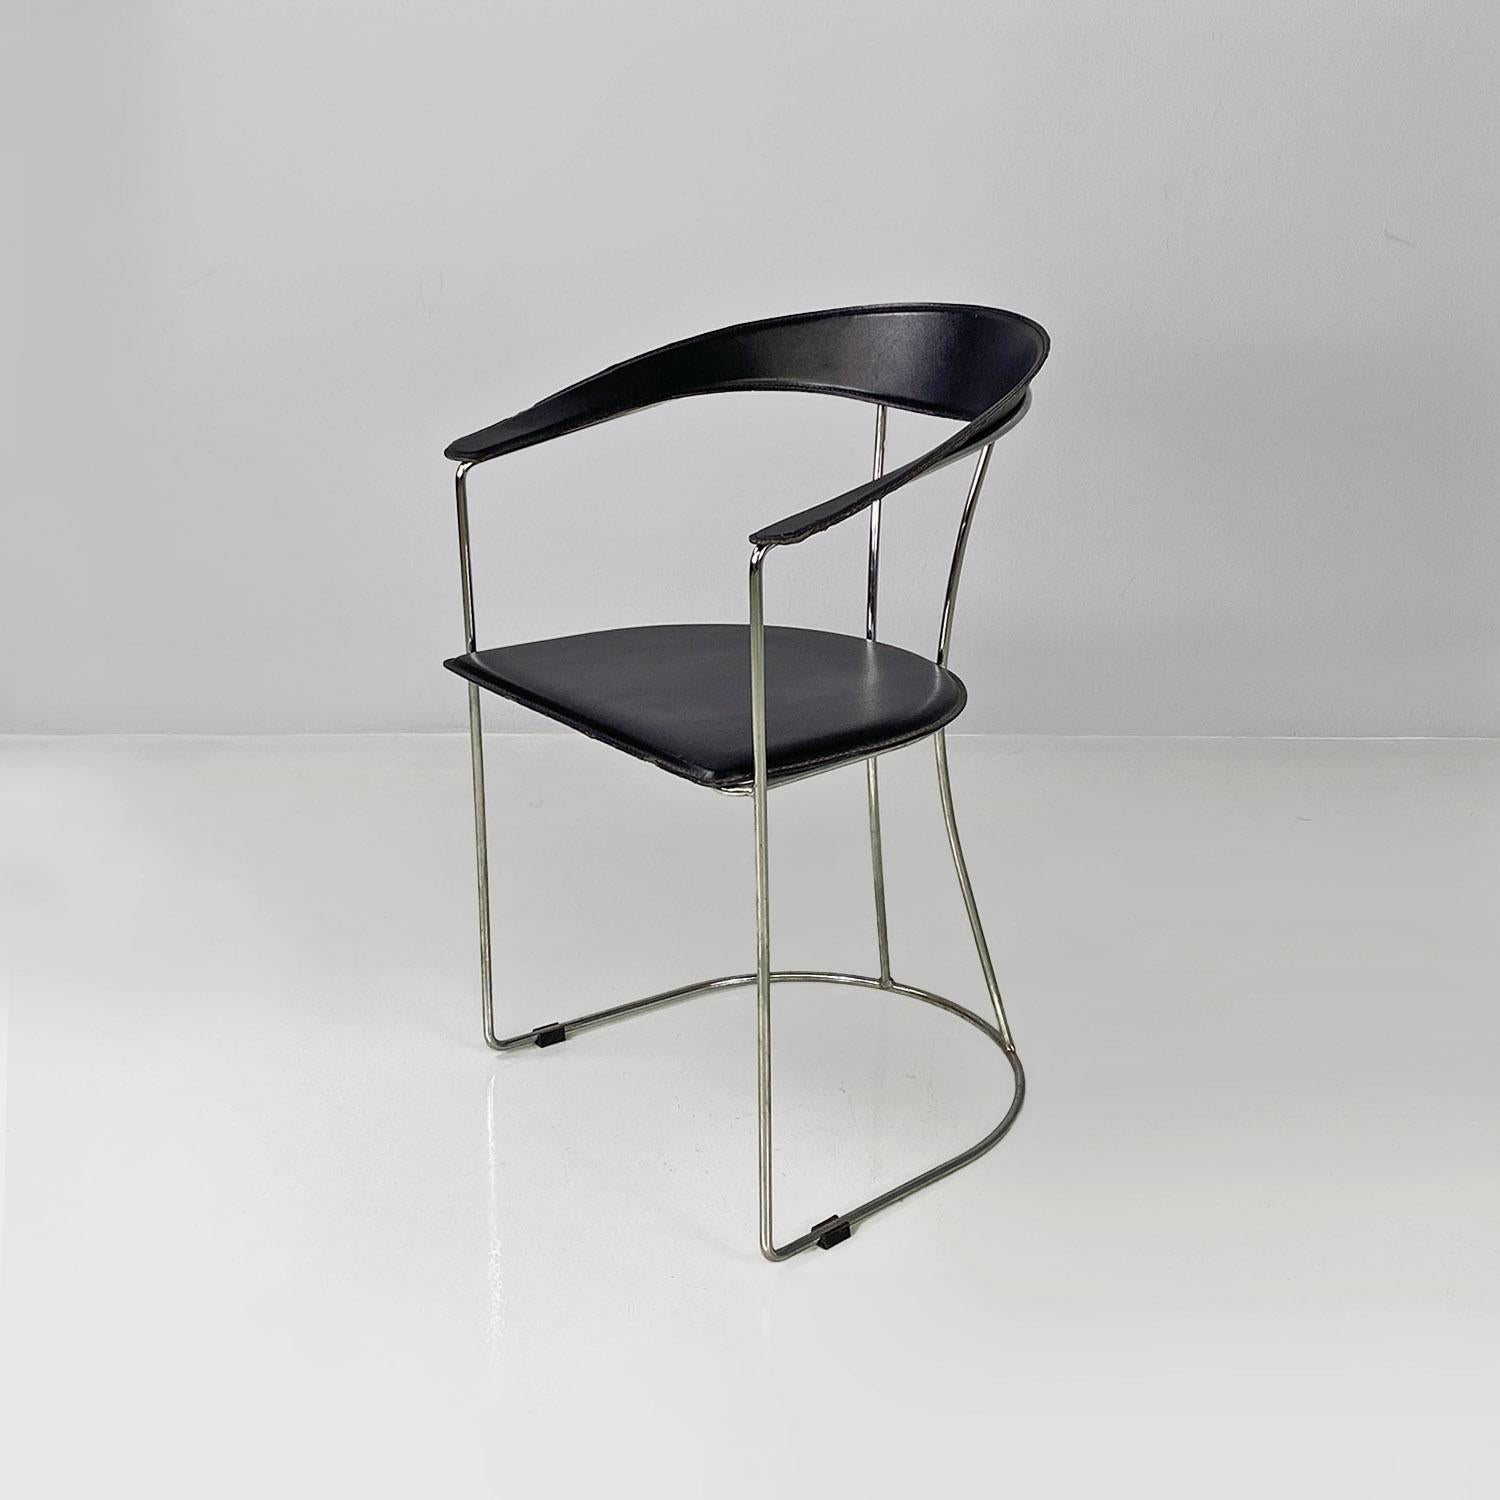 Moderne italienische Stühle aus verchromtem Metall und schwarzem Leder in geschwungener Form, 1980er Jahre.
Stuhl mit Armlehnen, Gestell aus verchromtem Stahl, Rückenlehne aus gebogenem Metall und Sitz mit schwarzem Lederbezug.
Er kommt vom